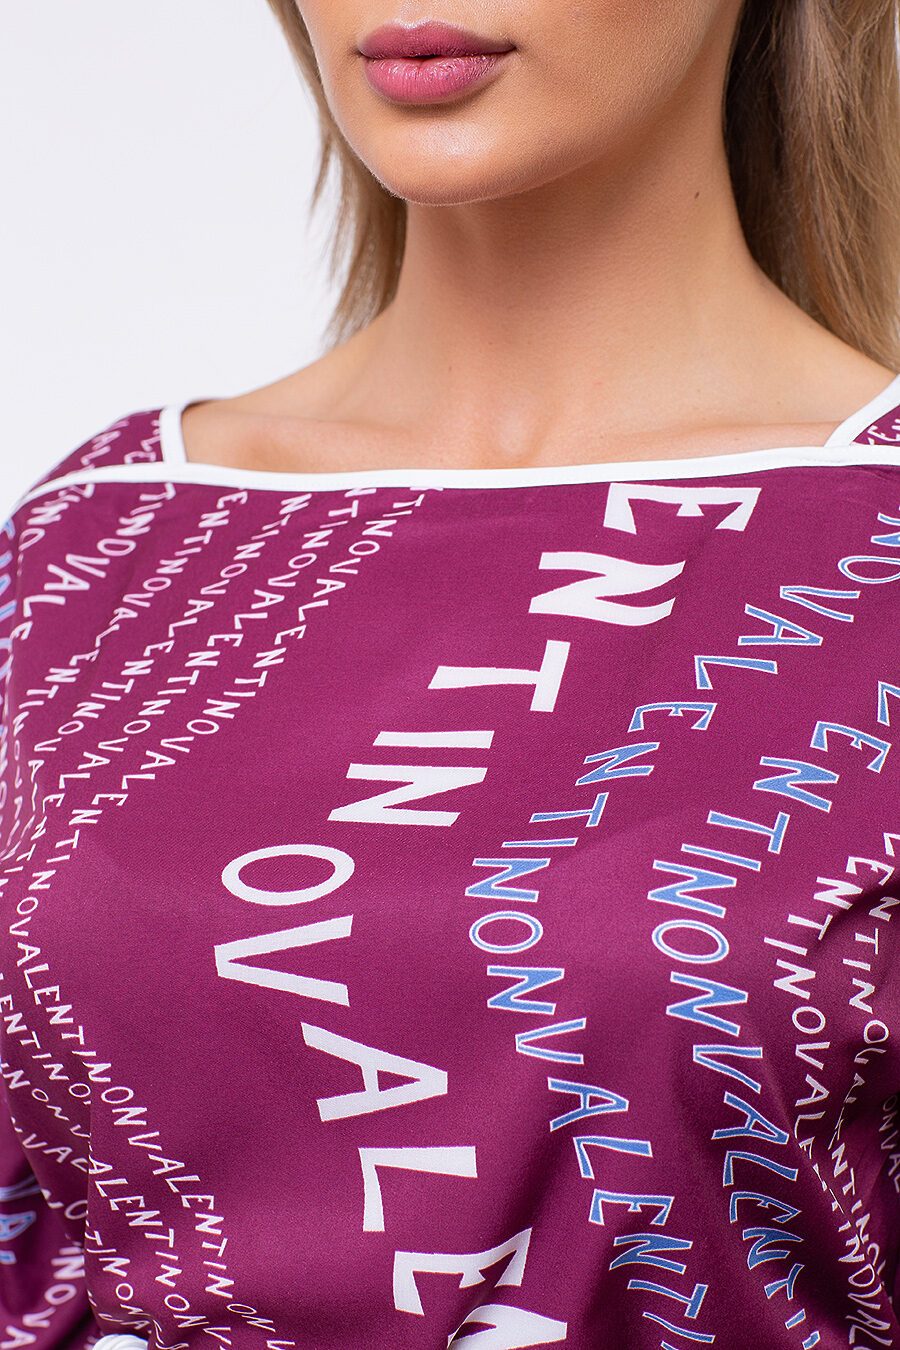 Блуза TUTACHI (125189), купить в Moyo.moda